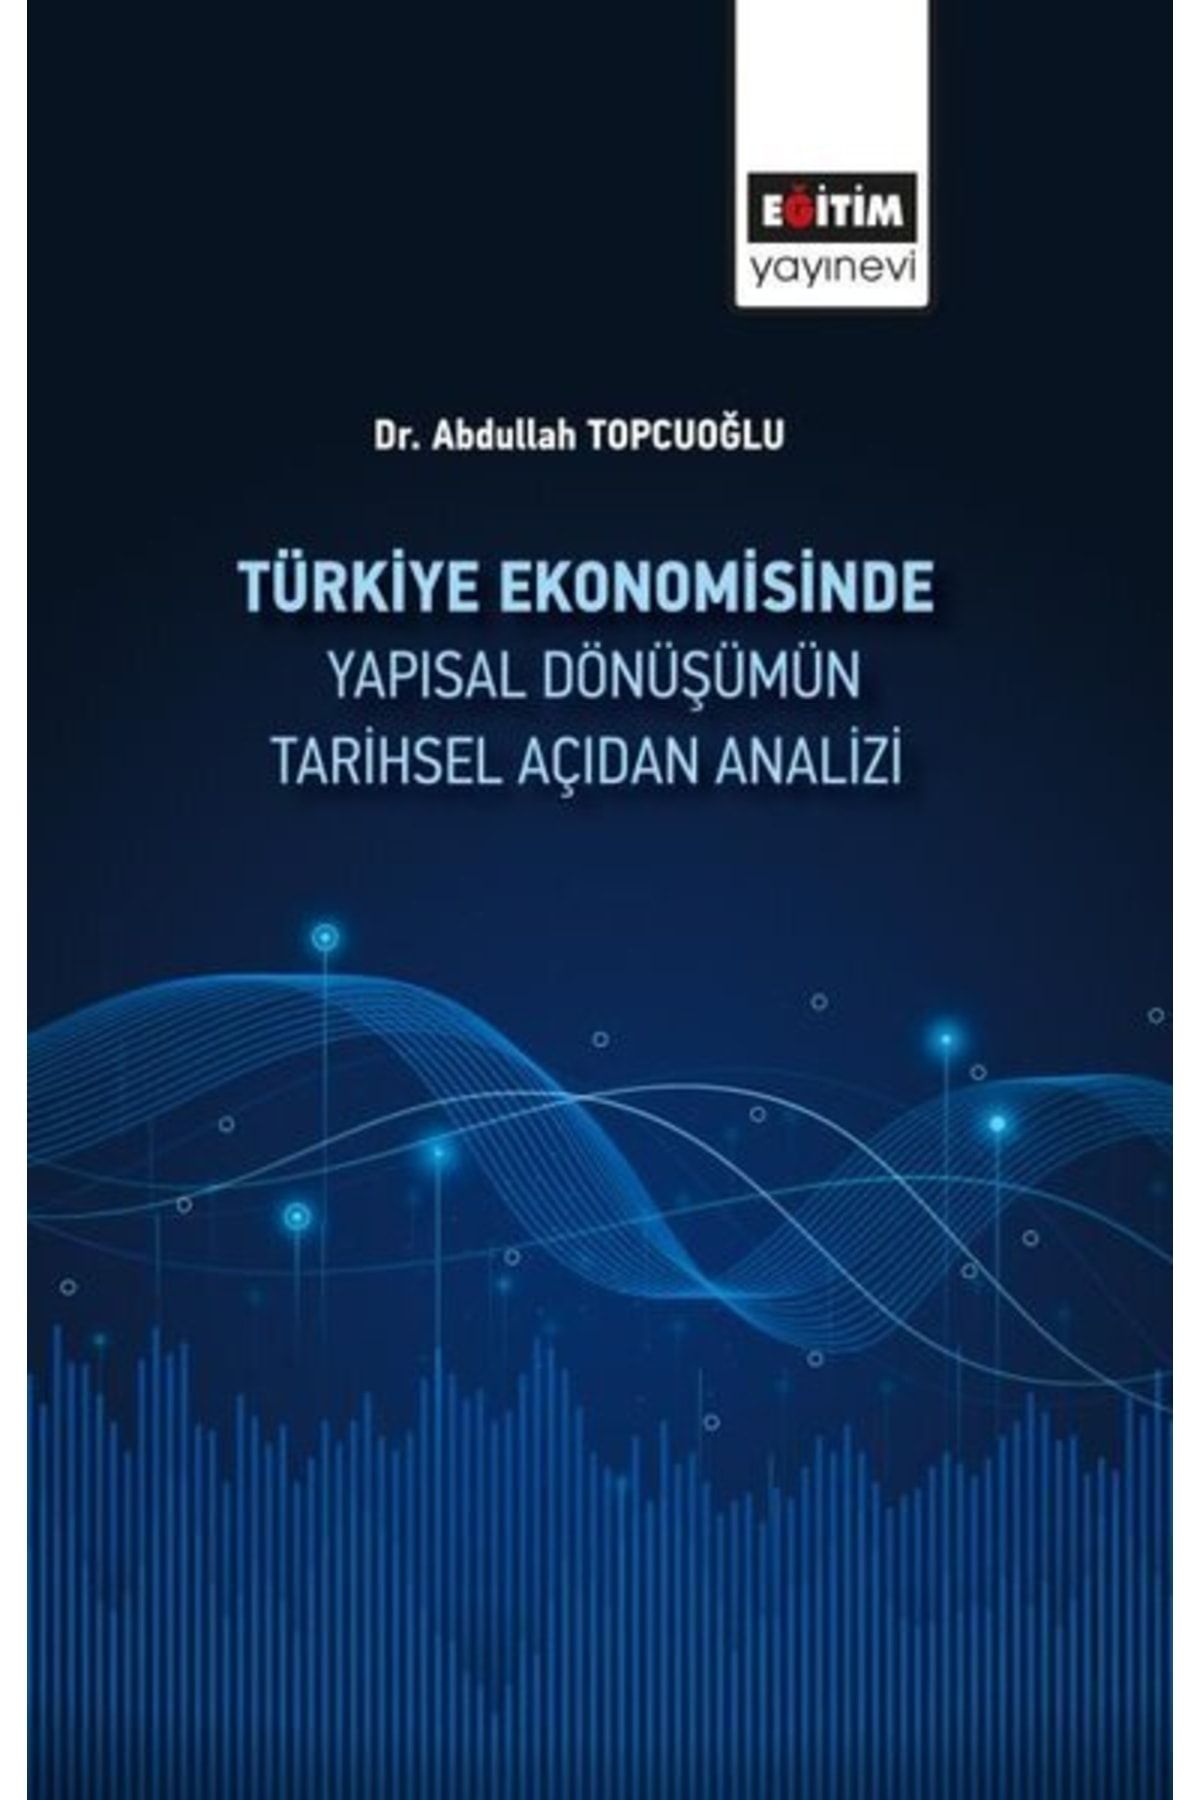 Eğitim Yayınevi Türkiye Ekonomisinde Yapısal Dönüşümün Tarihsel Açidan Analizi